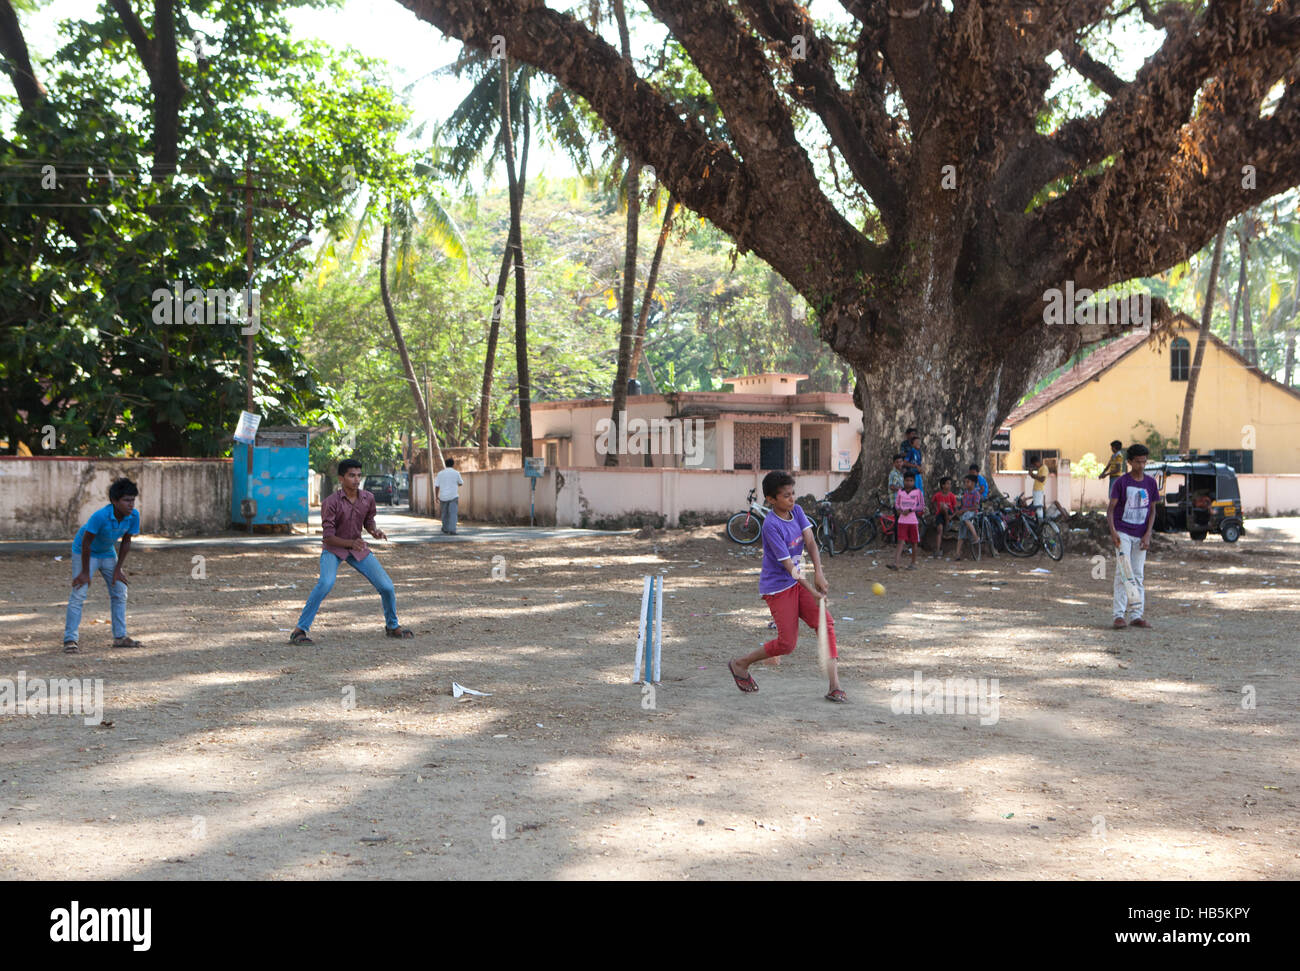 Ragazzi giocare a cricket nell'ombra di un grande albero di Fort Kochi (Cochin), Kerala, India Foto Stock